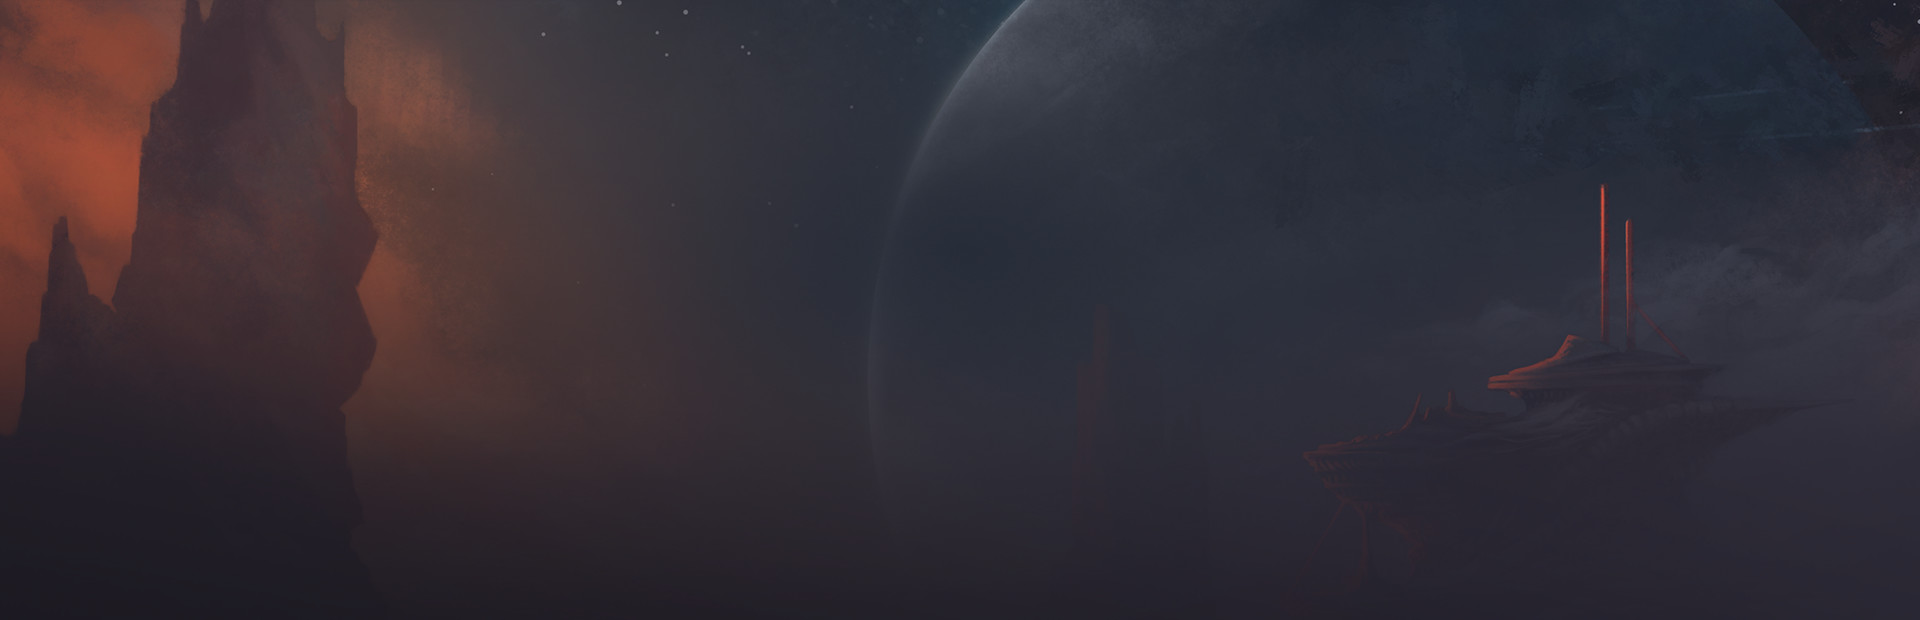 Stellaris cover image